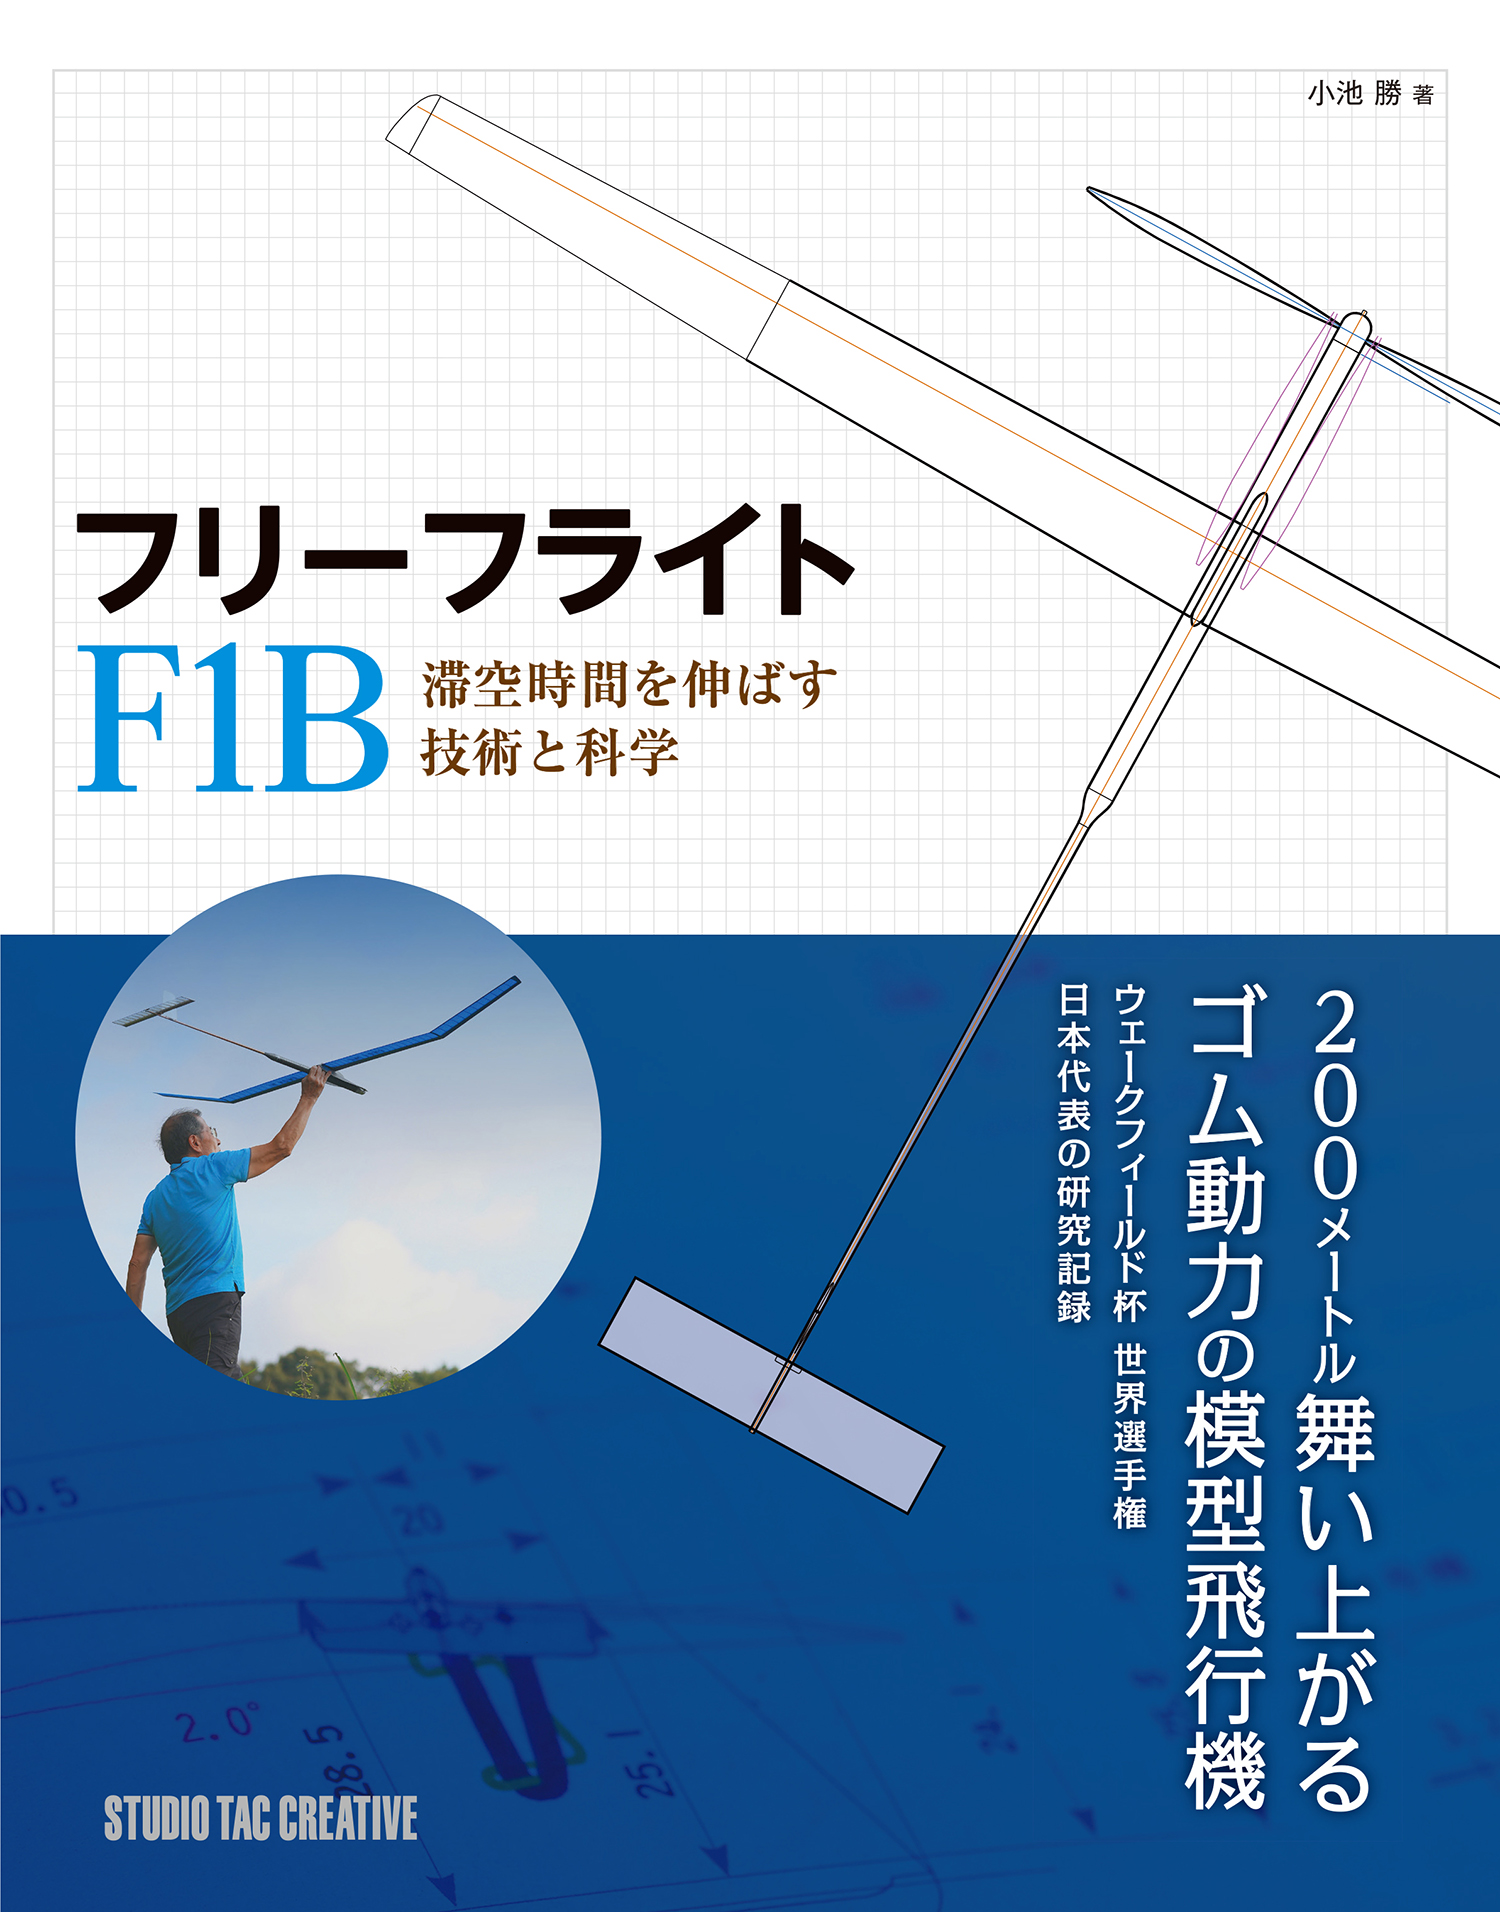 フリーフライト F1B 滞空時間を伸ばす技術と科学の商品画像